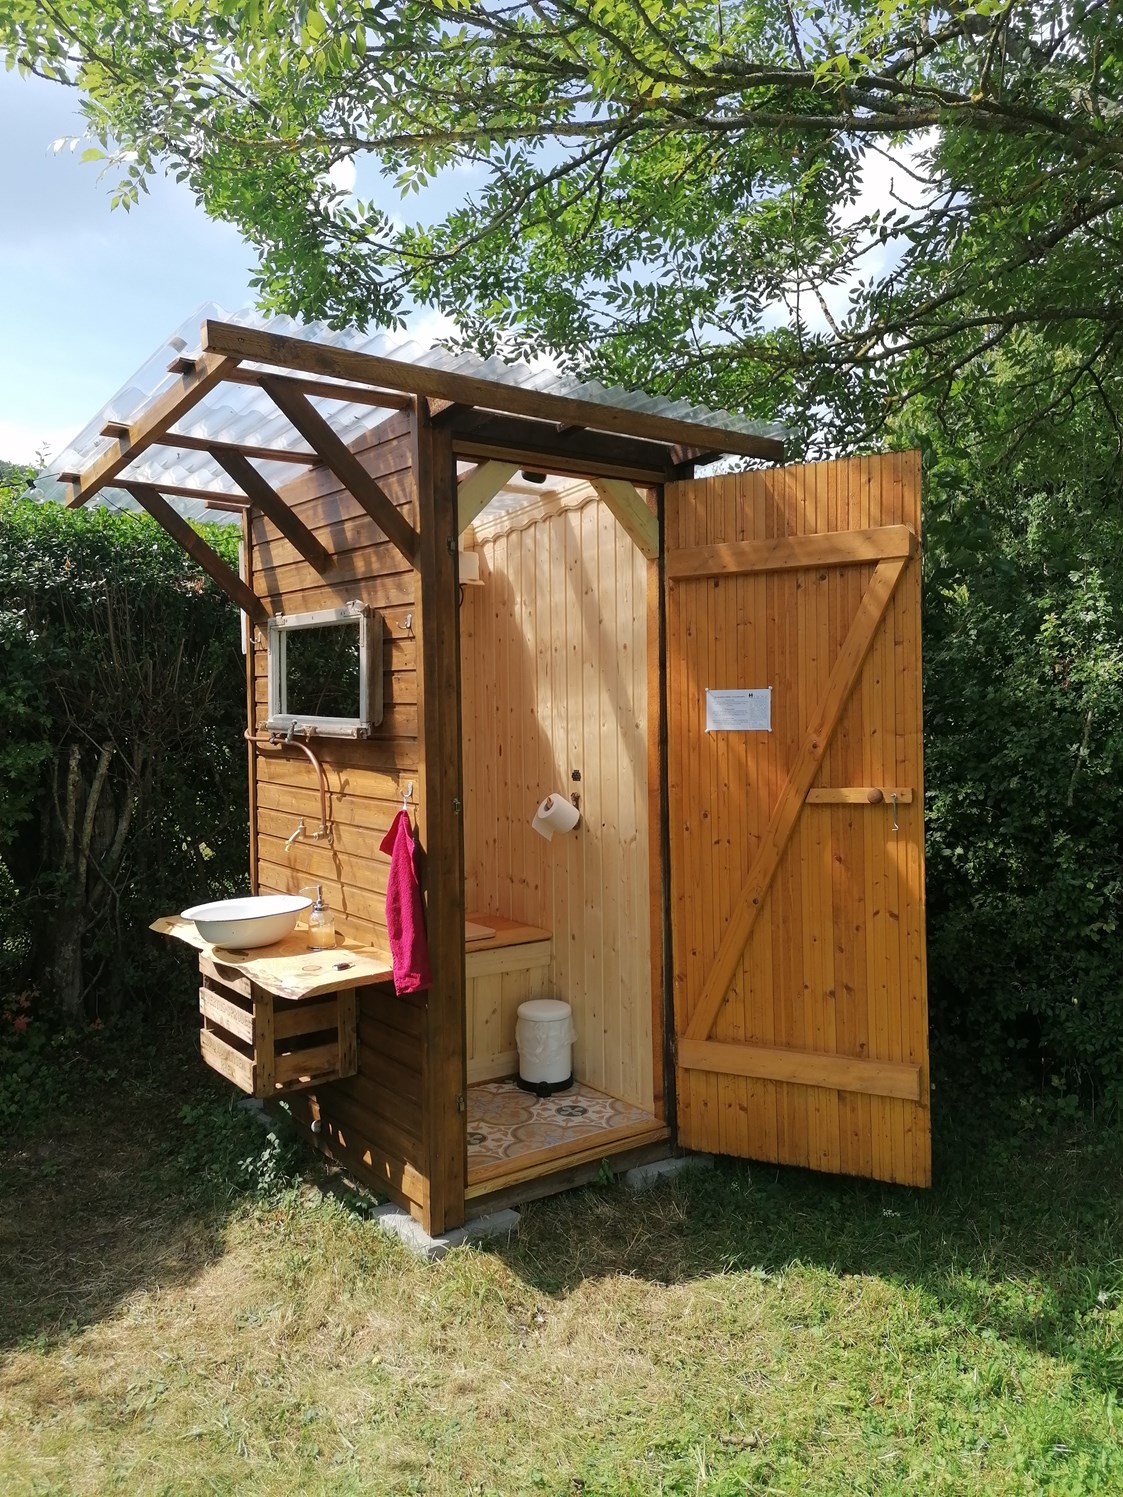 Glampingunterkunft: Toilettenhäuschen mit Kompost-Trenntoilette - Ecolodge Hinterland in Biedenkopf